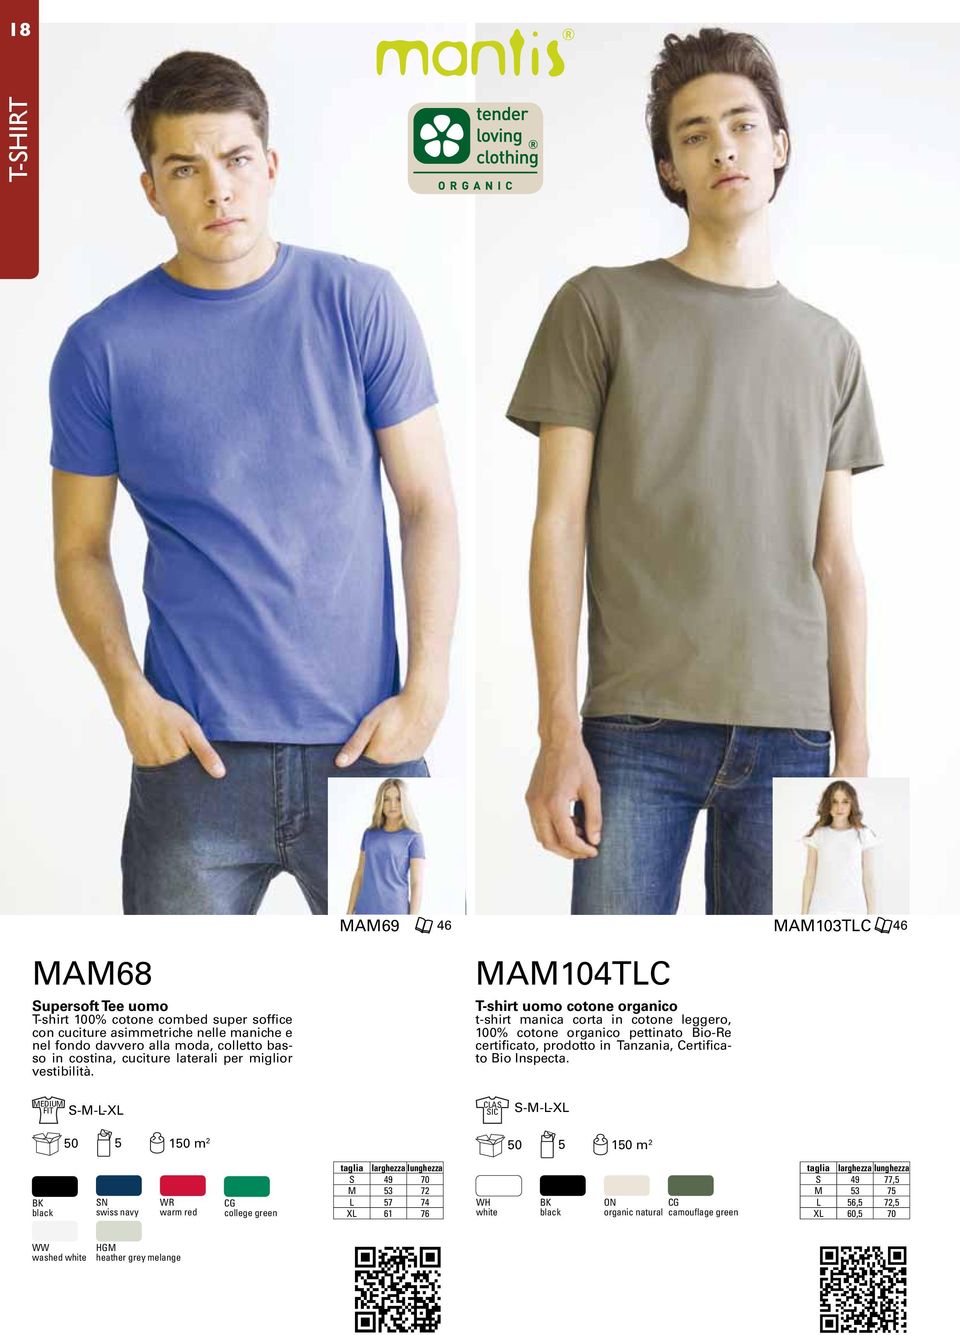 MAM104TLC T-shirt uomo cotone organico t-shirt manica corta in cotone leggero, 100% cotone organico pettinato Bio-Re certificato, prodotto in Tanzania, Certificato